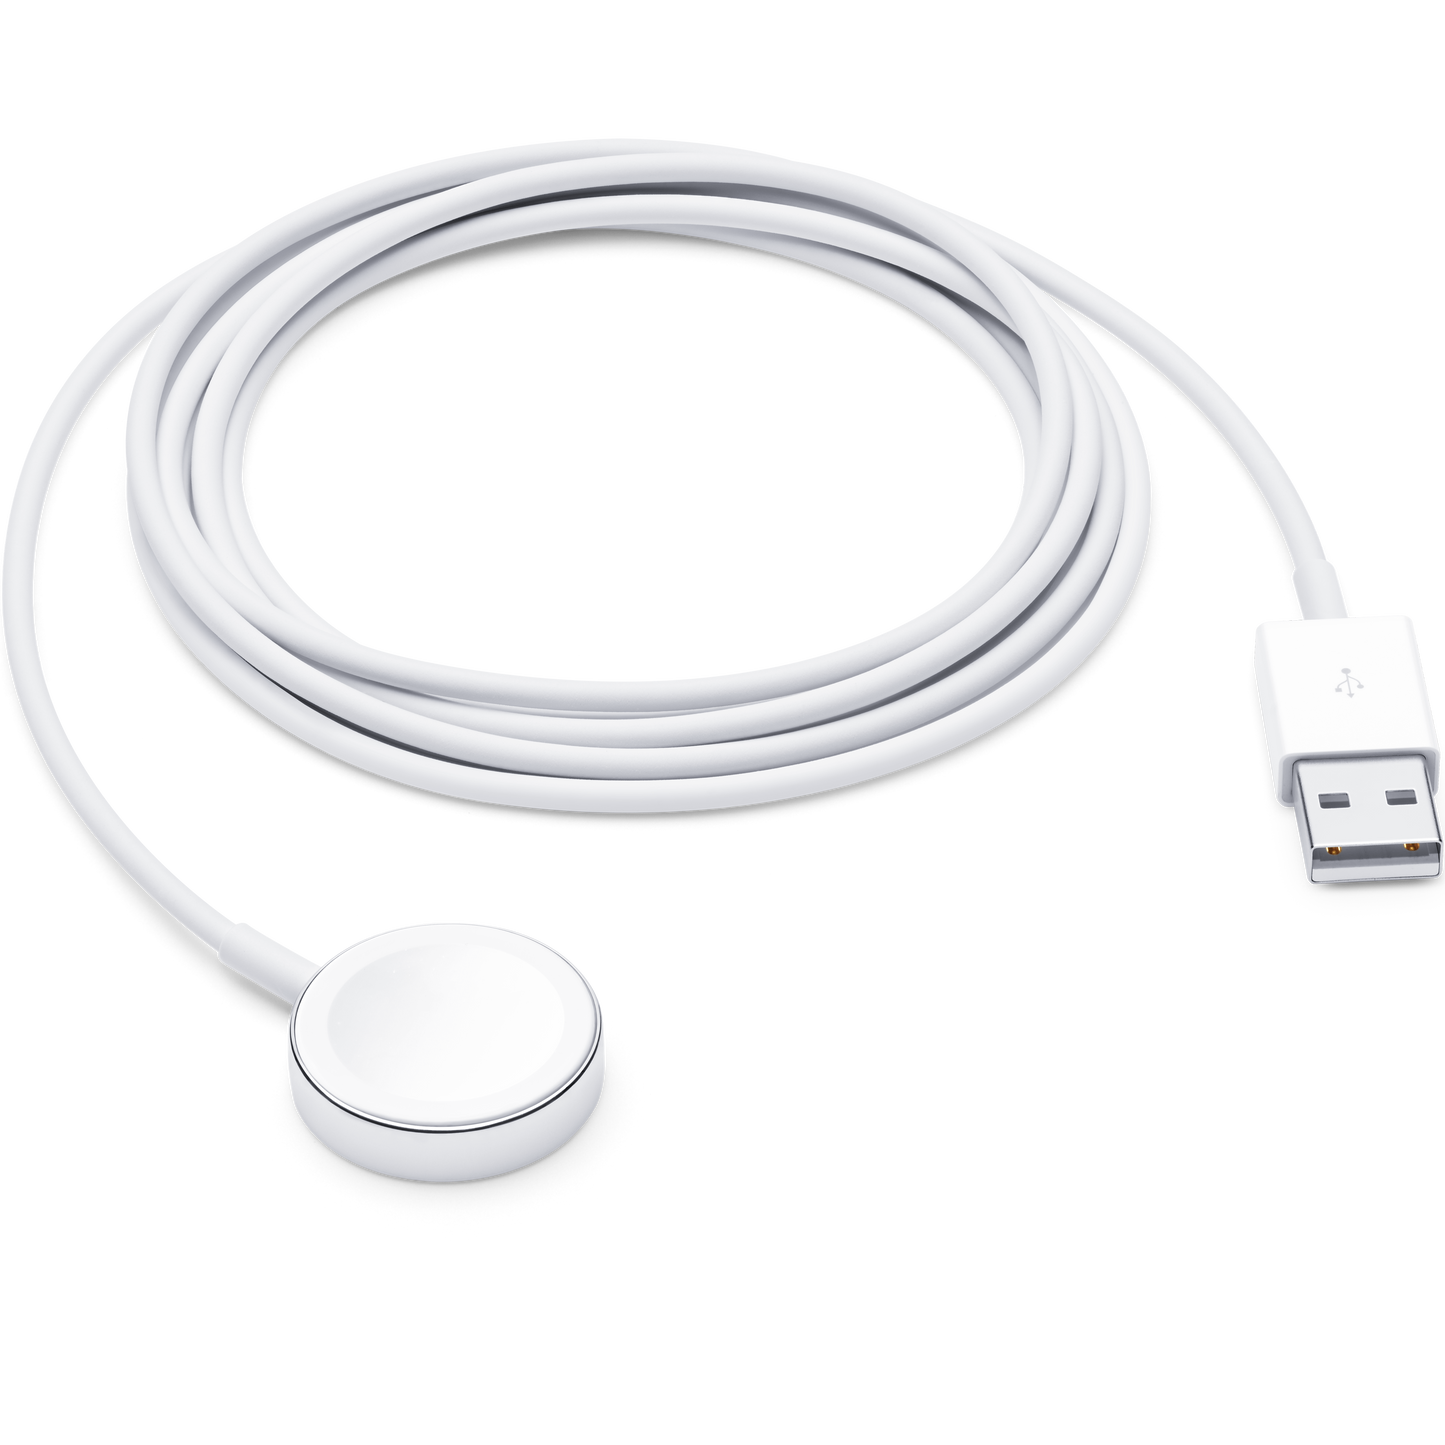 Cable de carga magnética para el Apple Watch (2 metros)